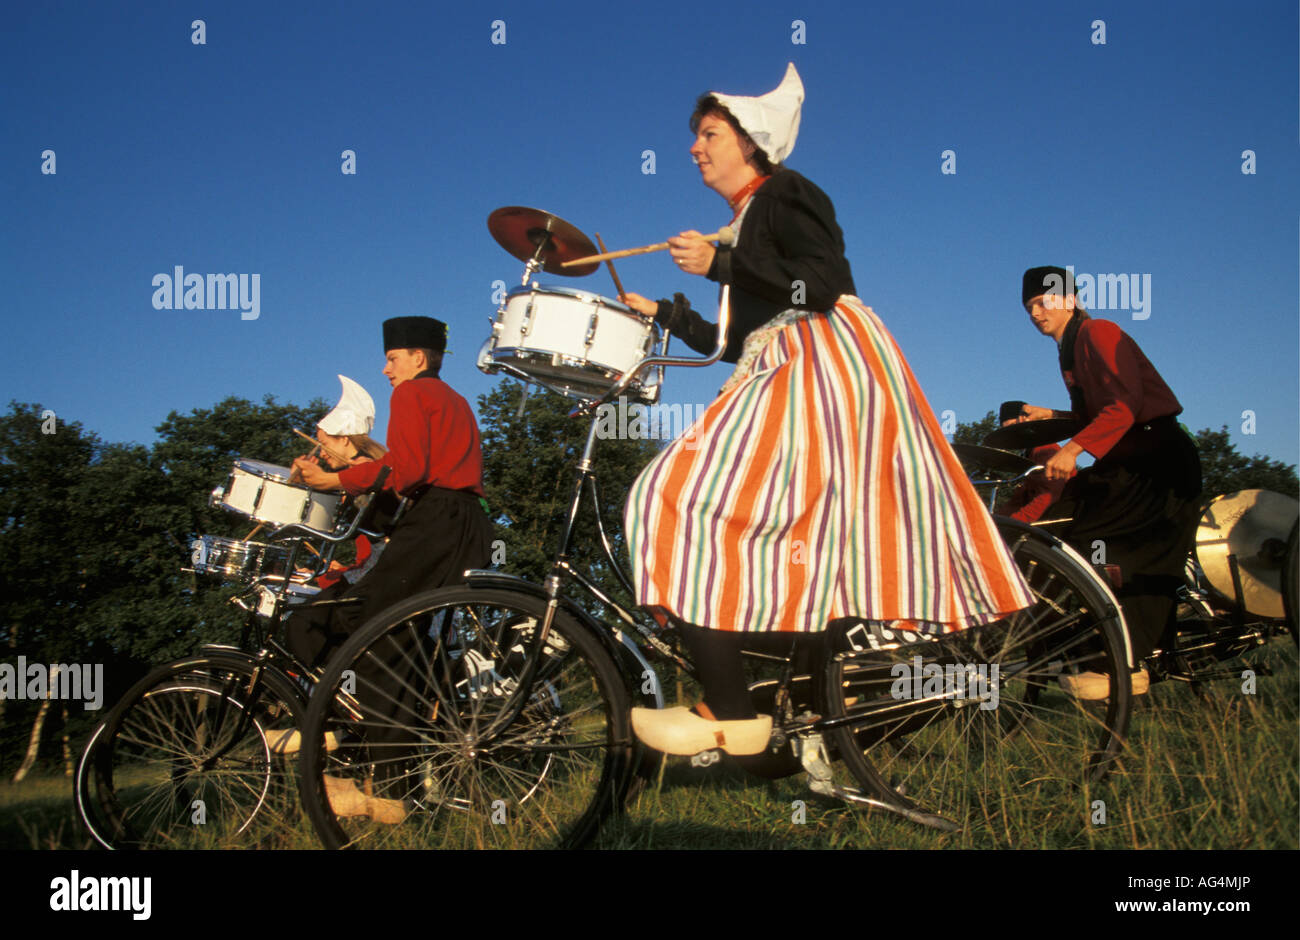 Pays-bas Opende Band crescendo d'effectuer en costume traditionnel néerlandais Banque D'Images